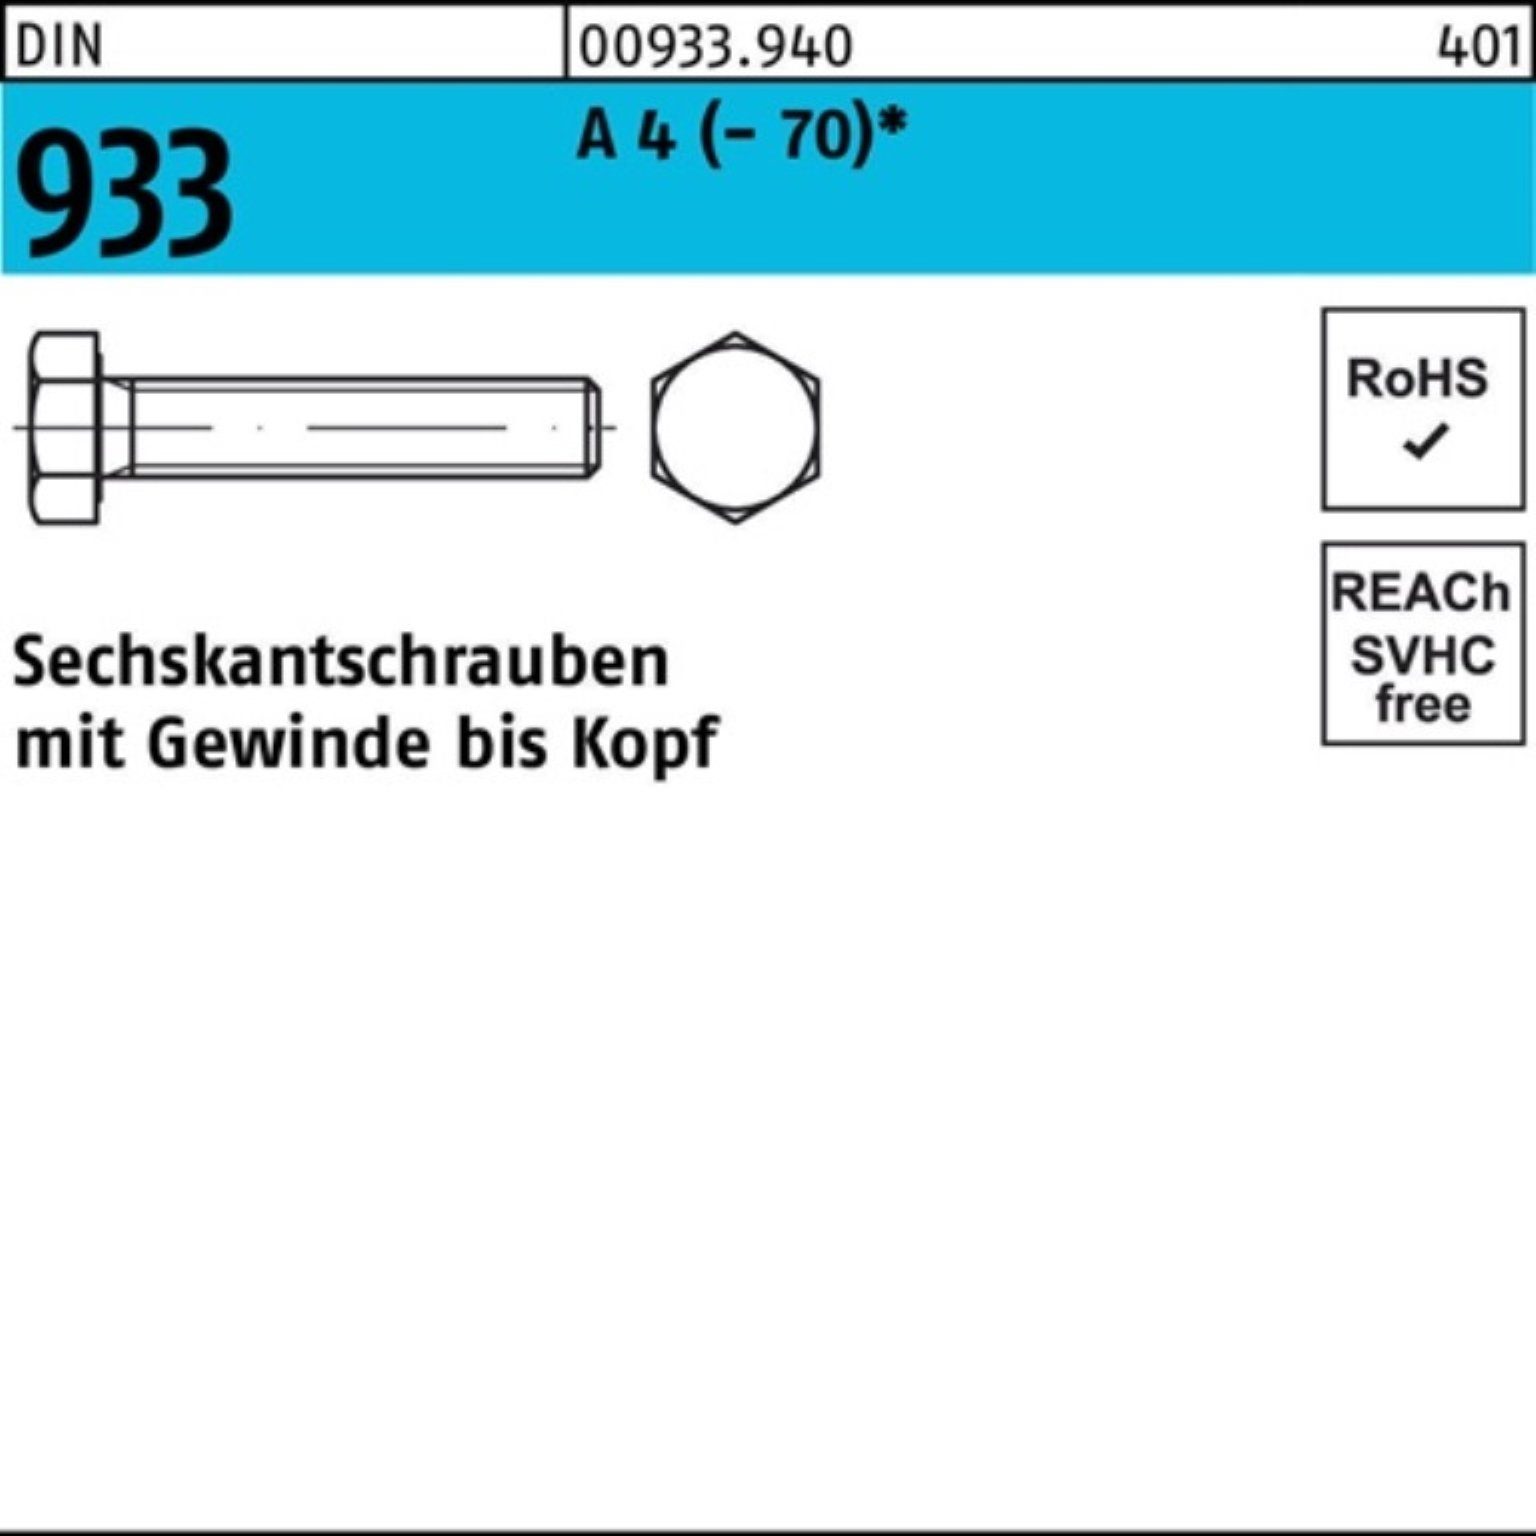 Sechskantschraube Pack 80 Sechskantschraube DIN 100er Reyher (70) VG 4 A DI 933 M36x 1 Stück